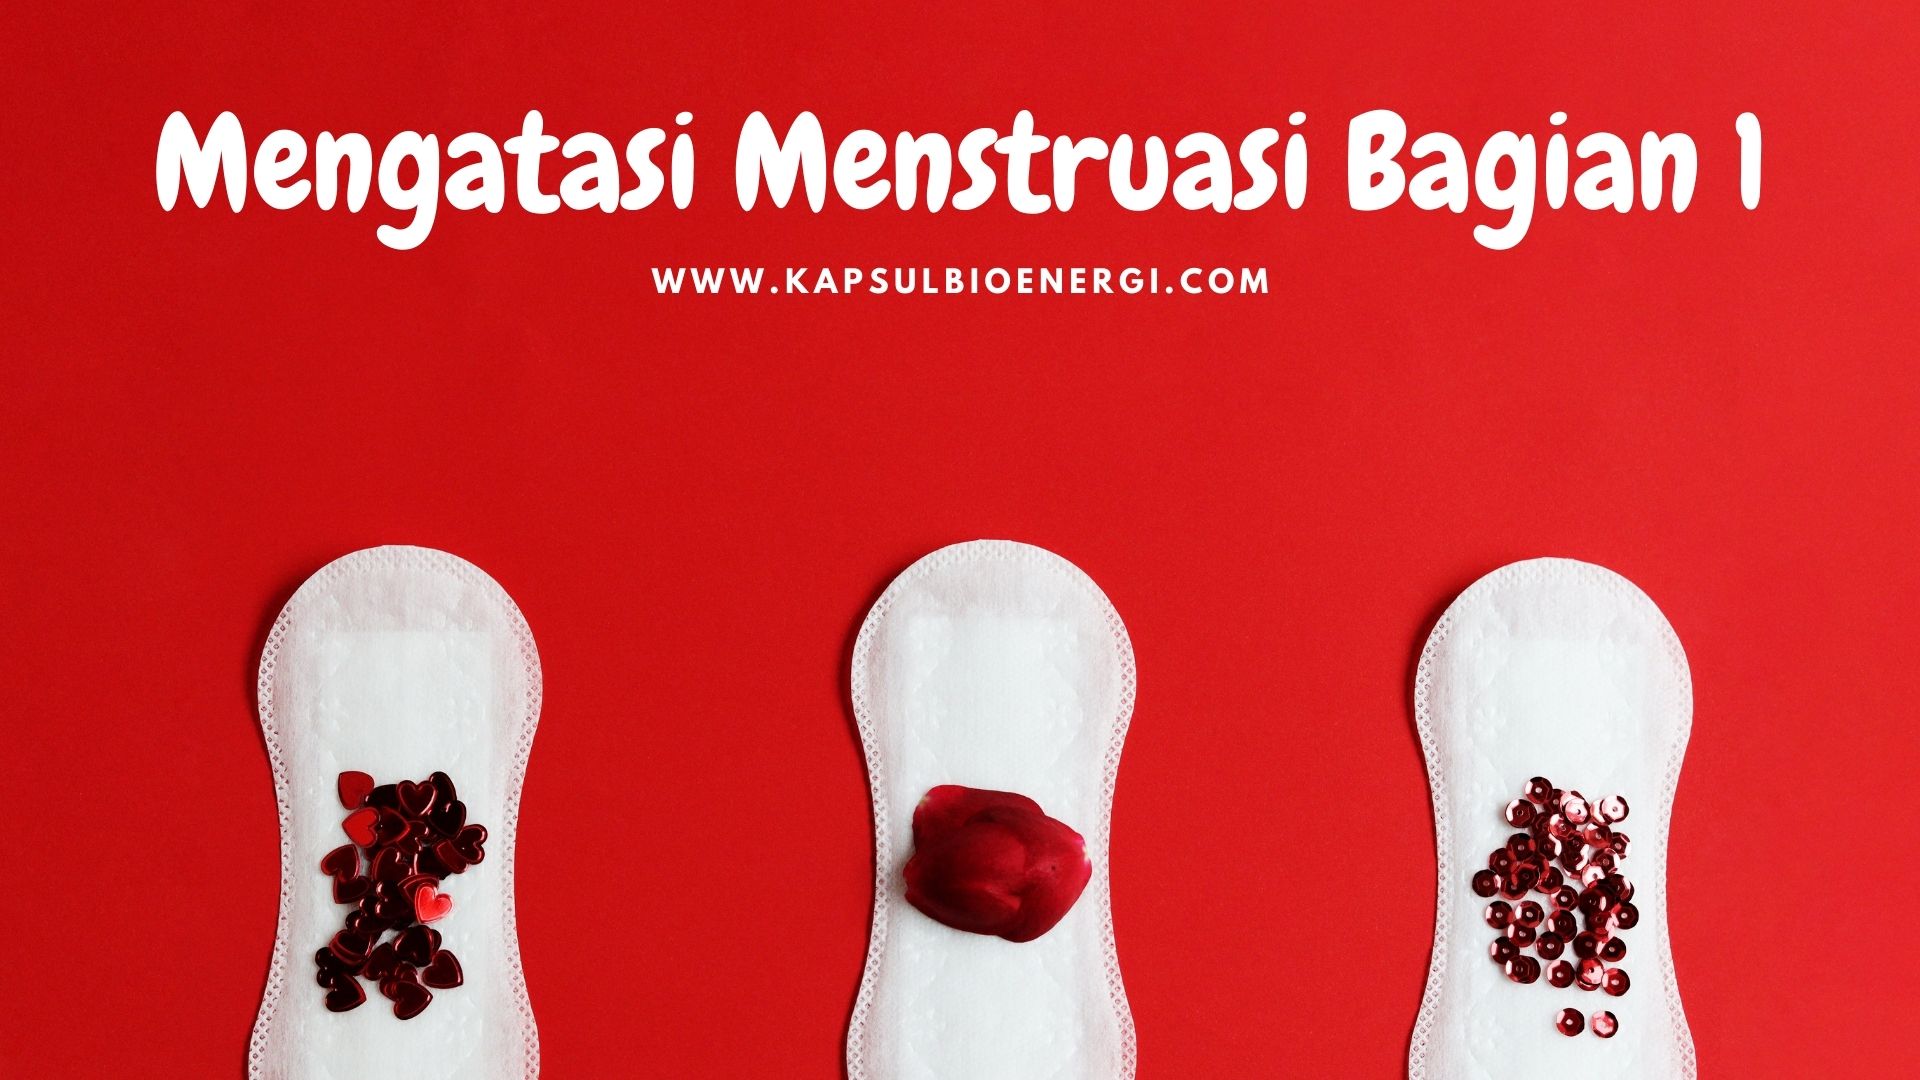 Mengatasi Nyeri Menstruasi; Mengenal Penyebab Menstruasi